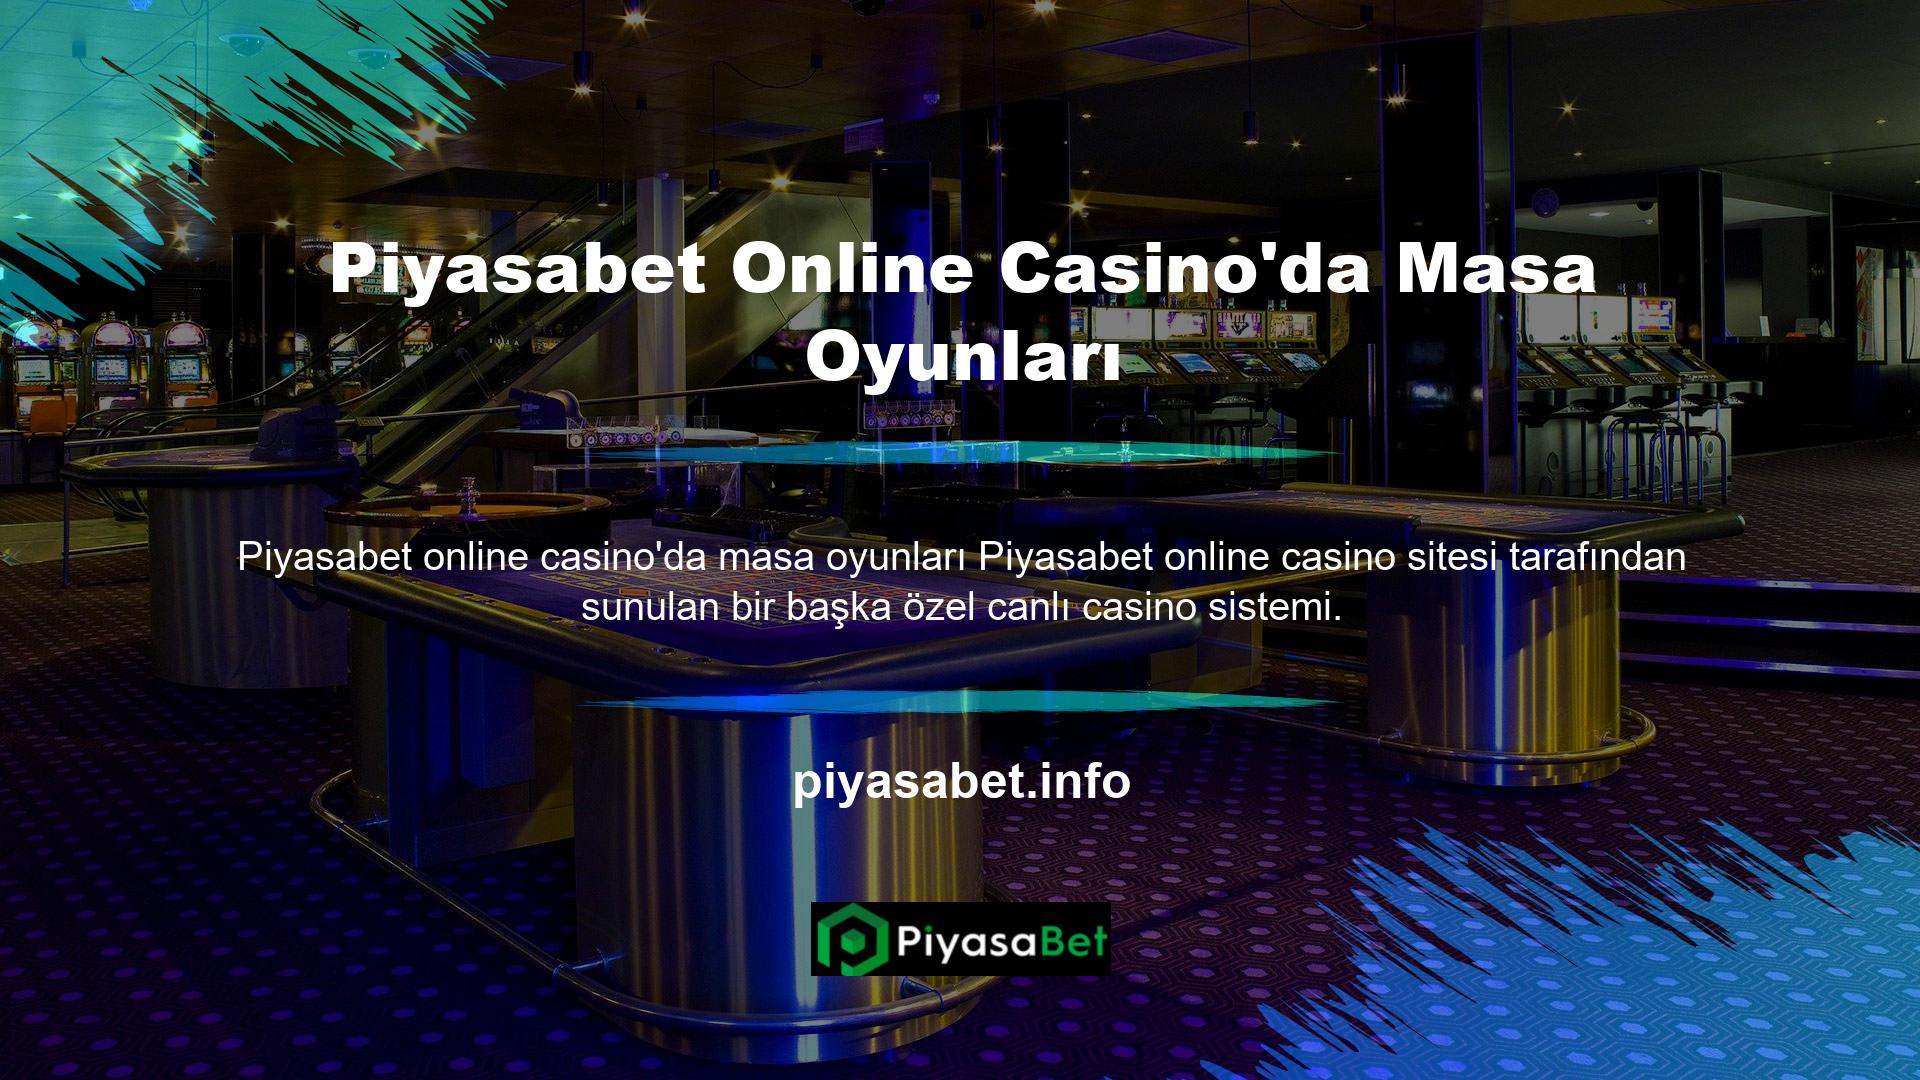 Gerçek çevrimiçi casinolar masalar ve oyunlarla gerçeküstü görünmekle kalmaz